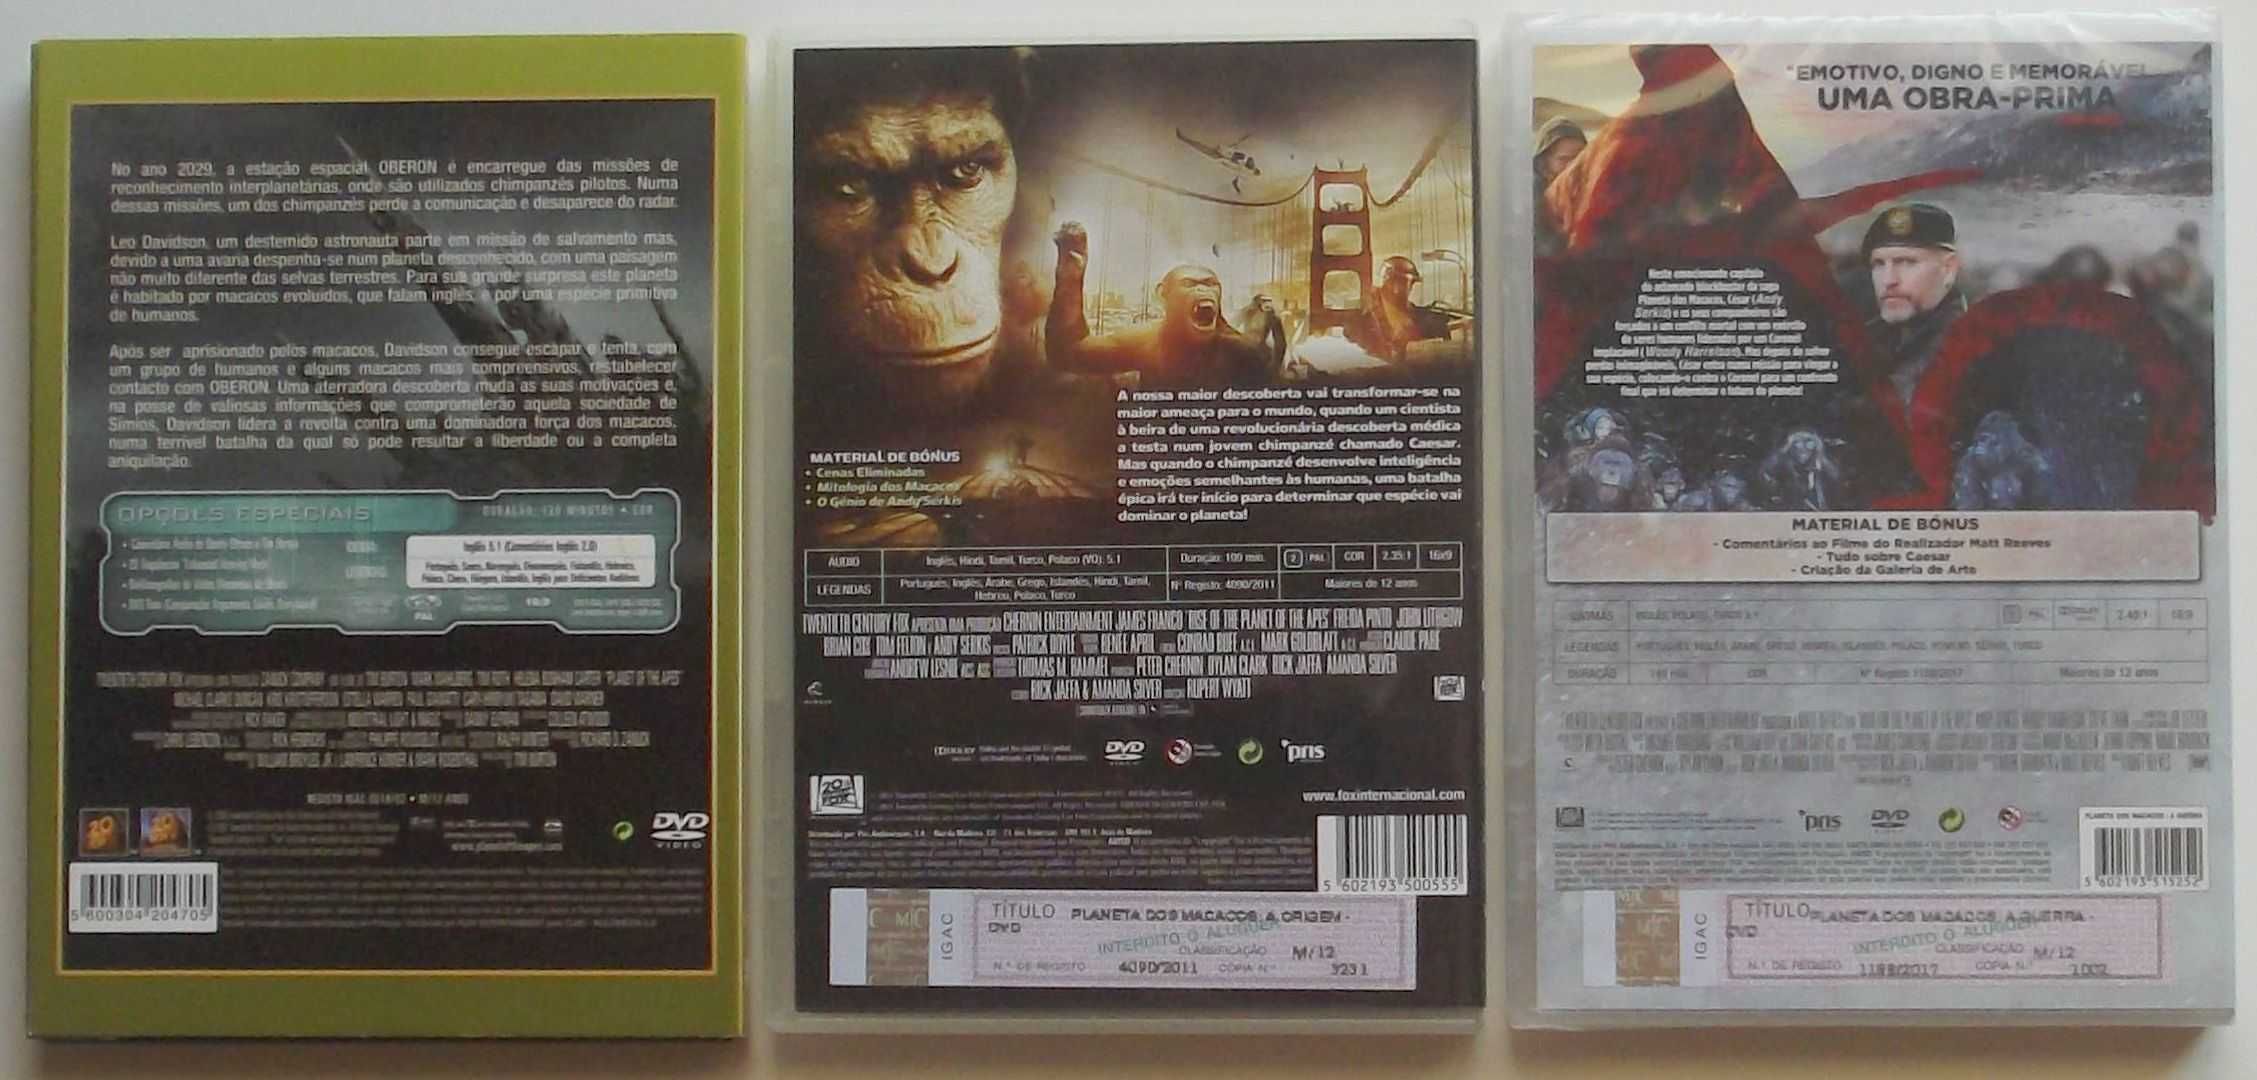 Filmes em DVD Planeta dos Macacos 1, 2 e 4